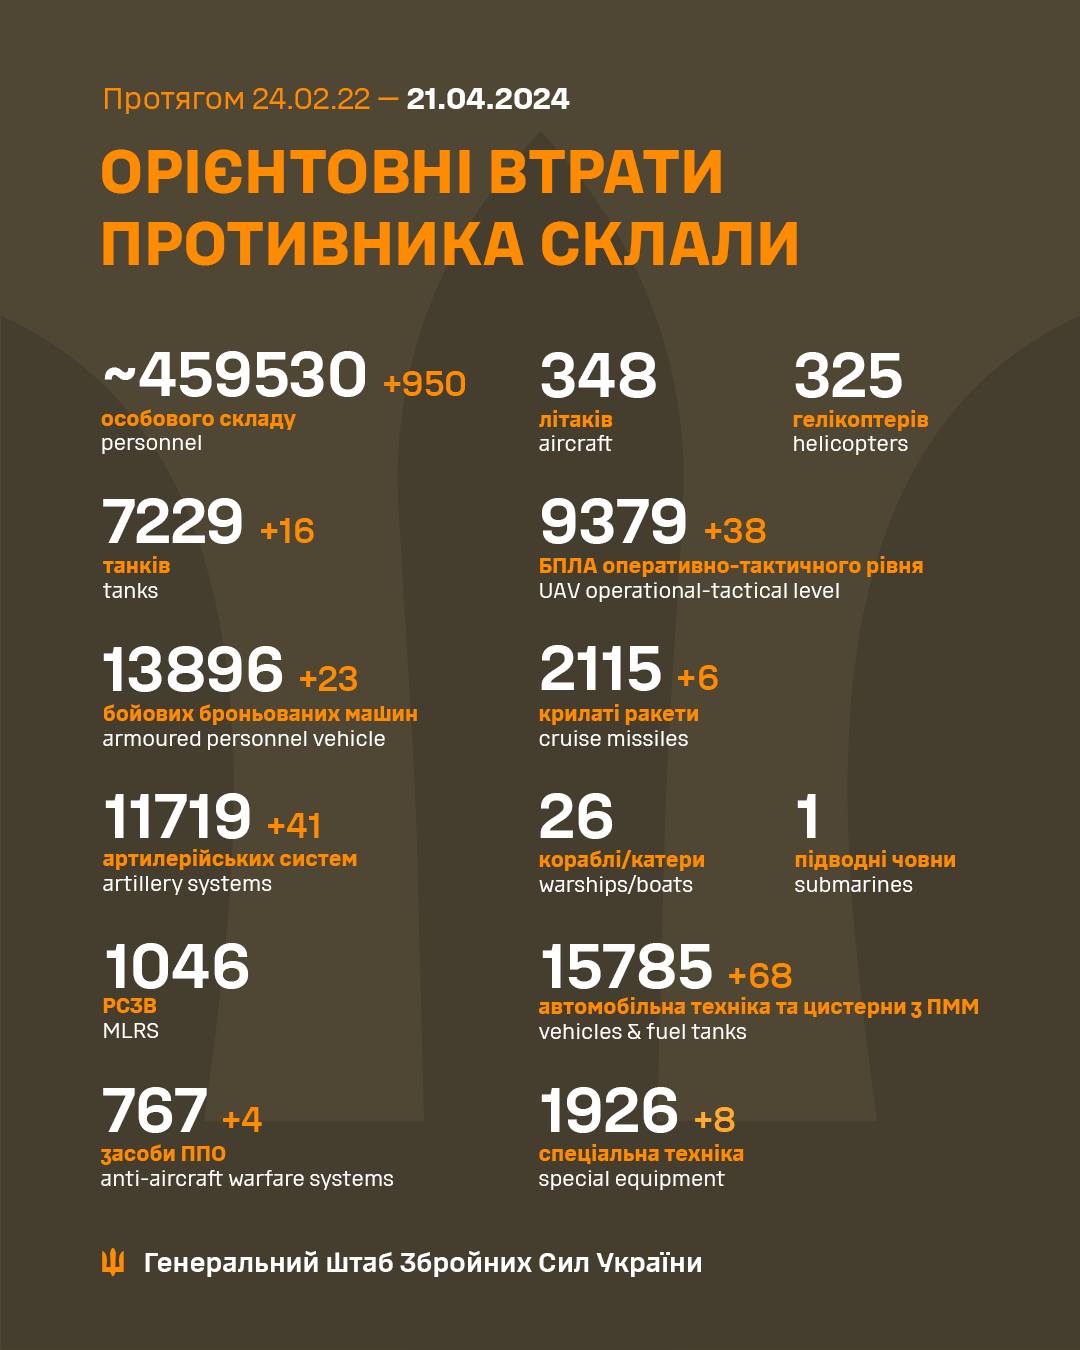 Более 900 окупантов и 41 артсистема. Генштаб обновил потери РФ в Украине